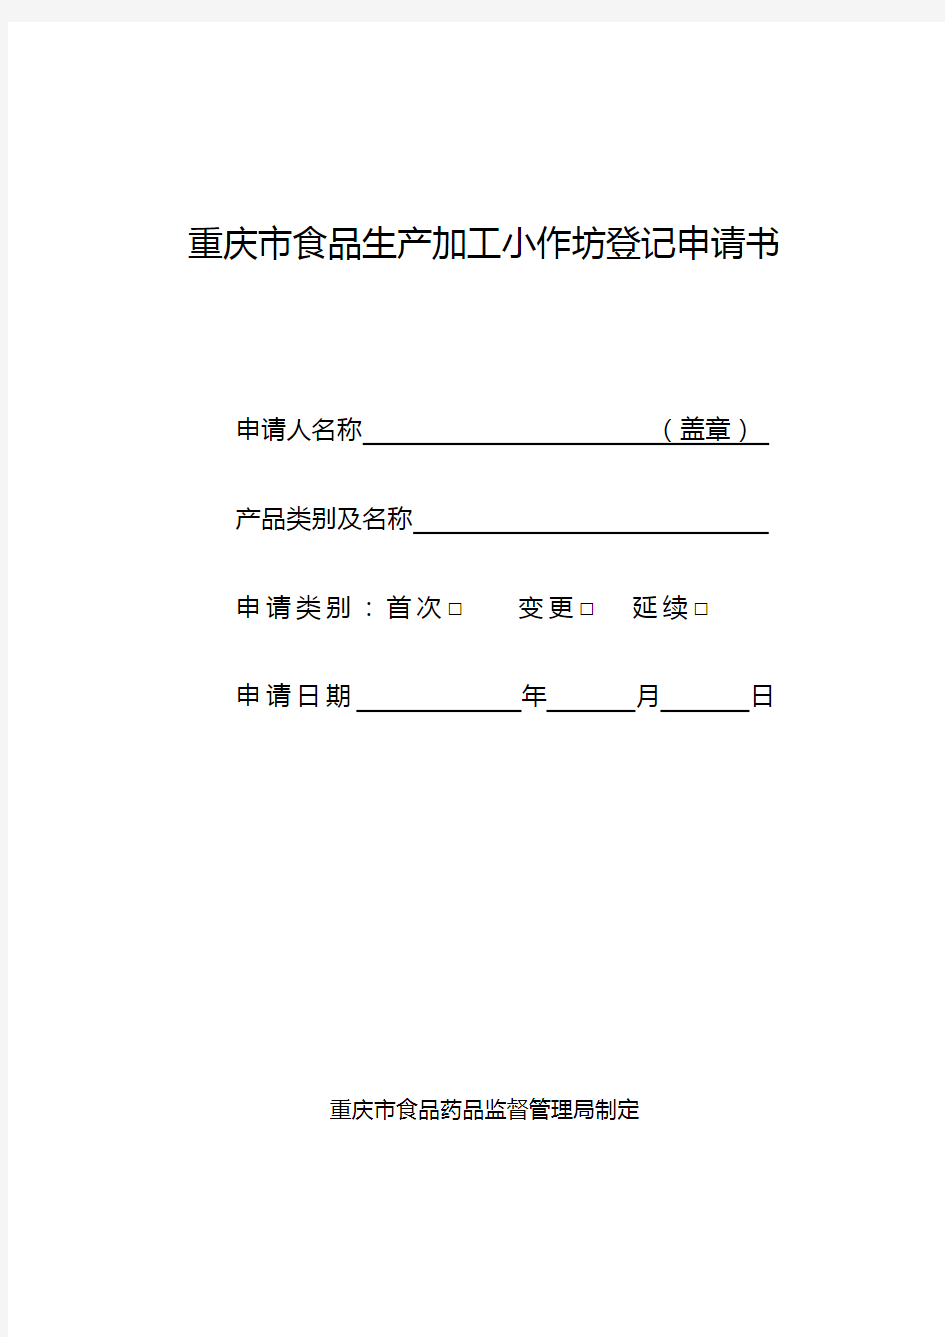 重庆市食品生产加工小作坊登记申请书